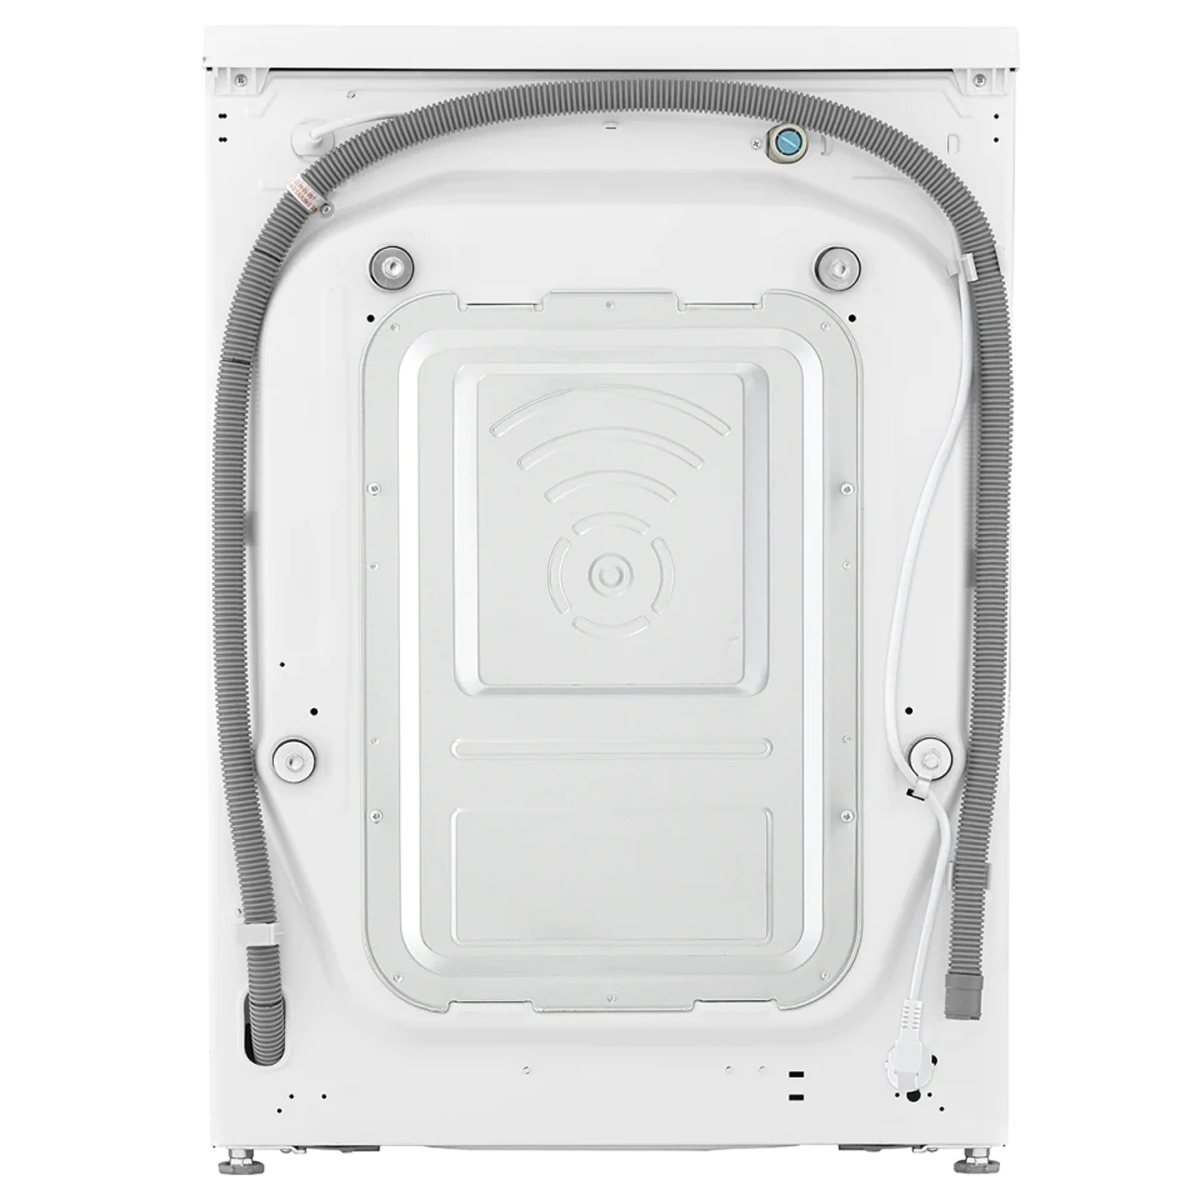 LG 樂金 FV9A90W2 9.0/5.0公斤 1200 轉 人工智能洗衣乾衣機 - ShineCreation 創暉百貨